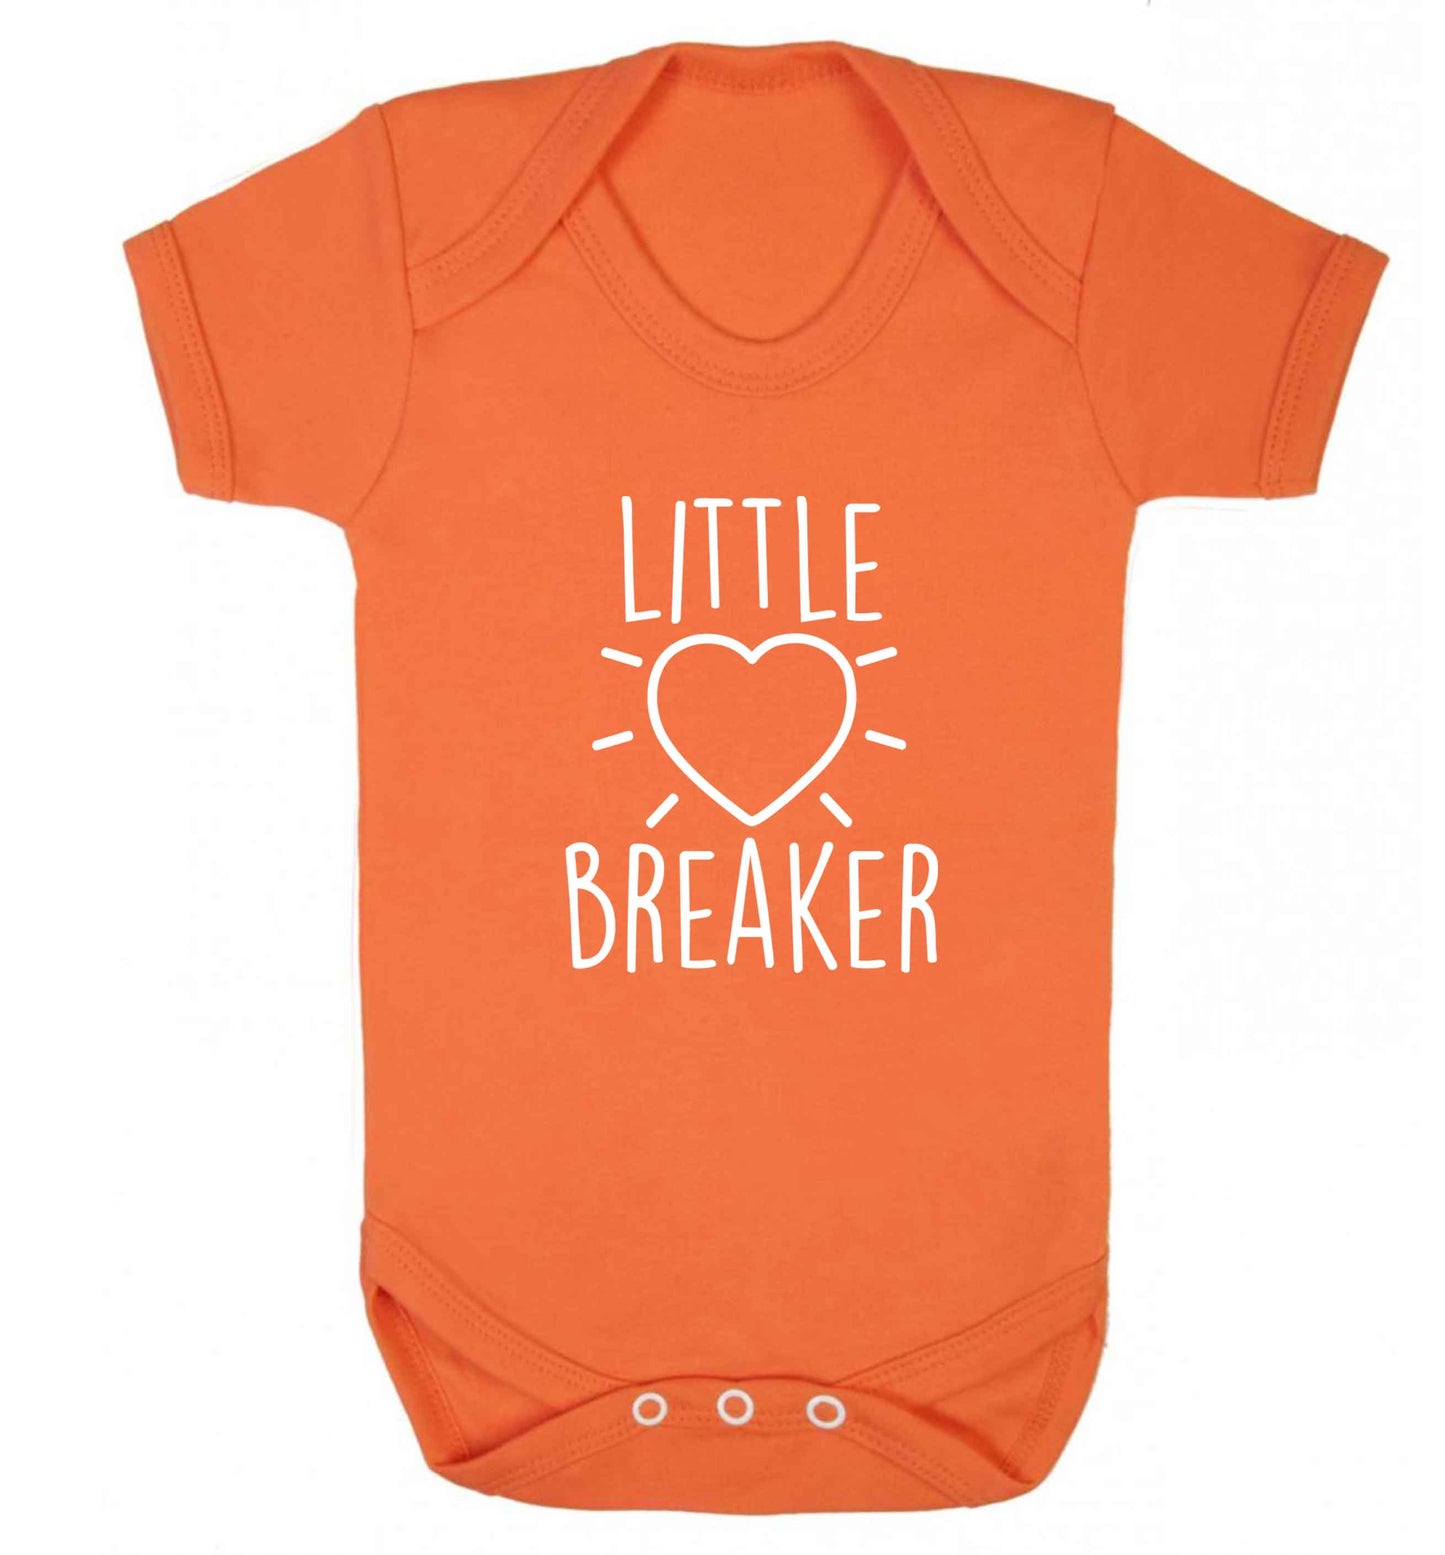 Little heartbreaker baby vest orange 18-24 months